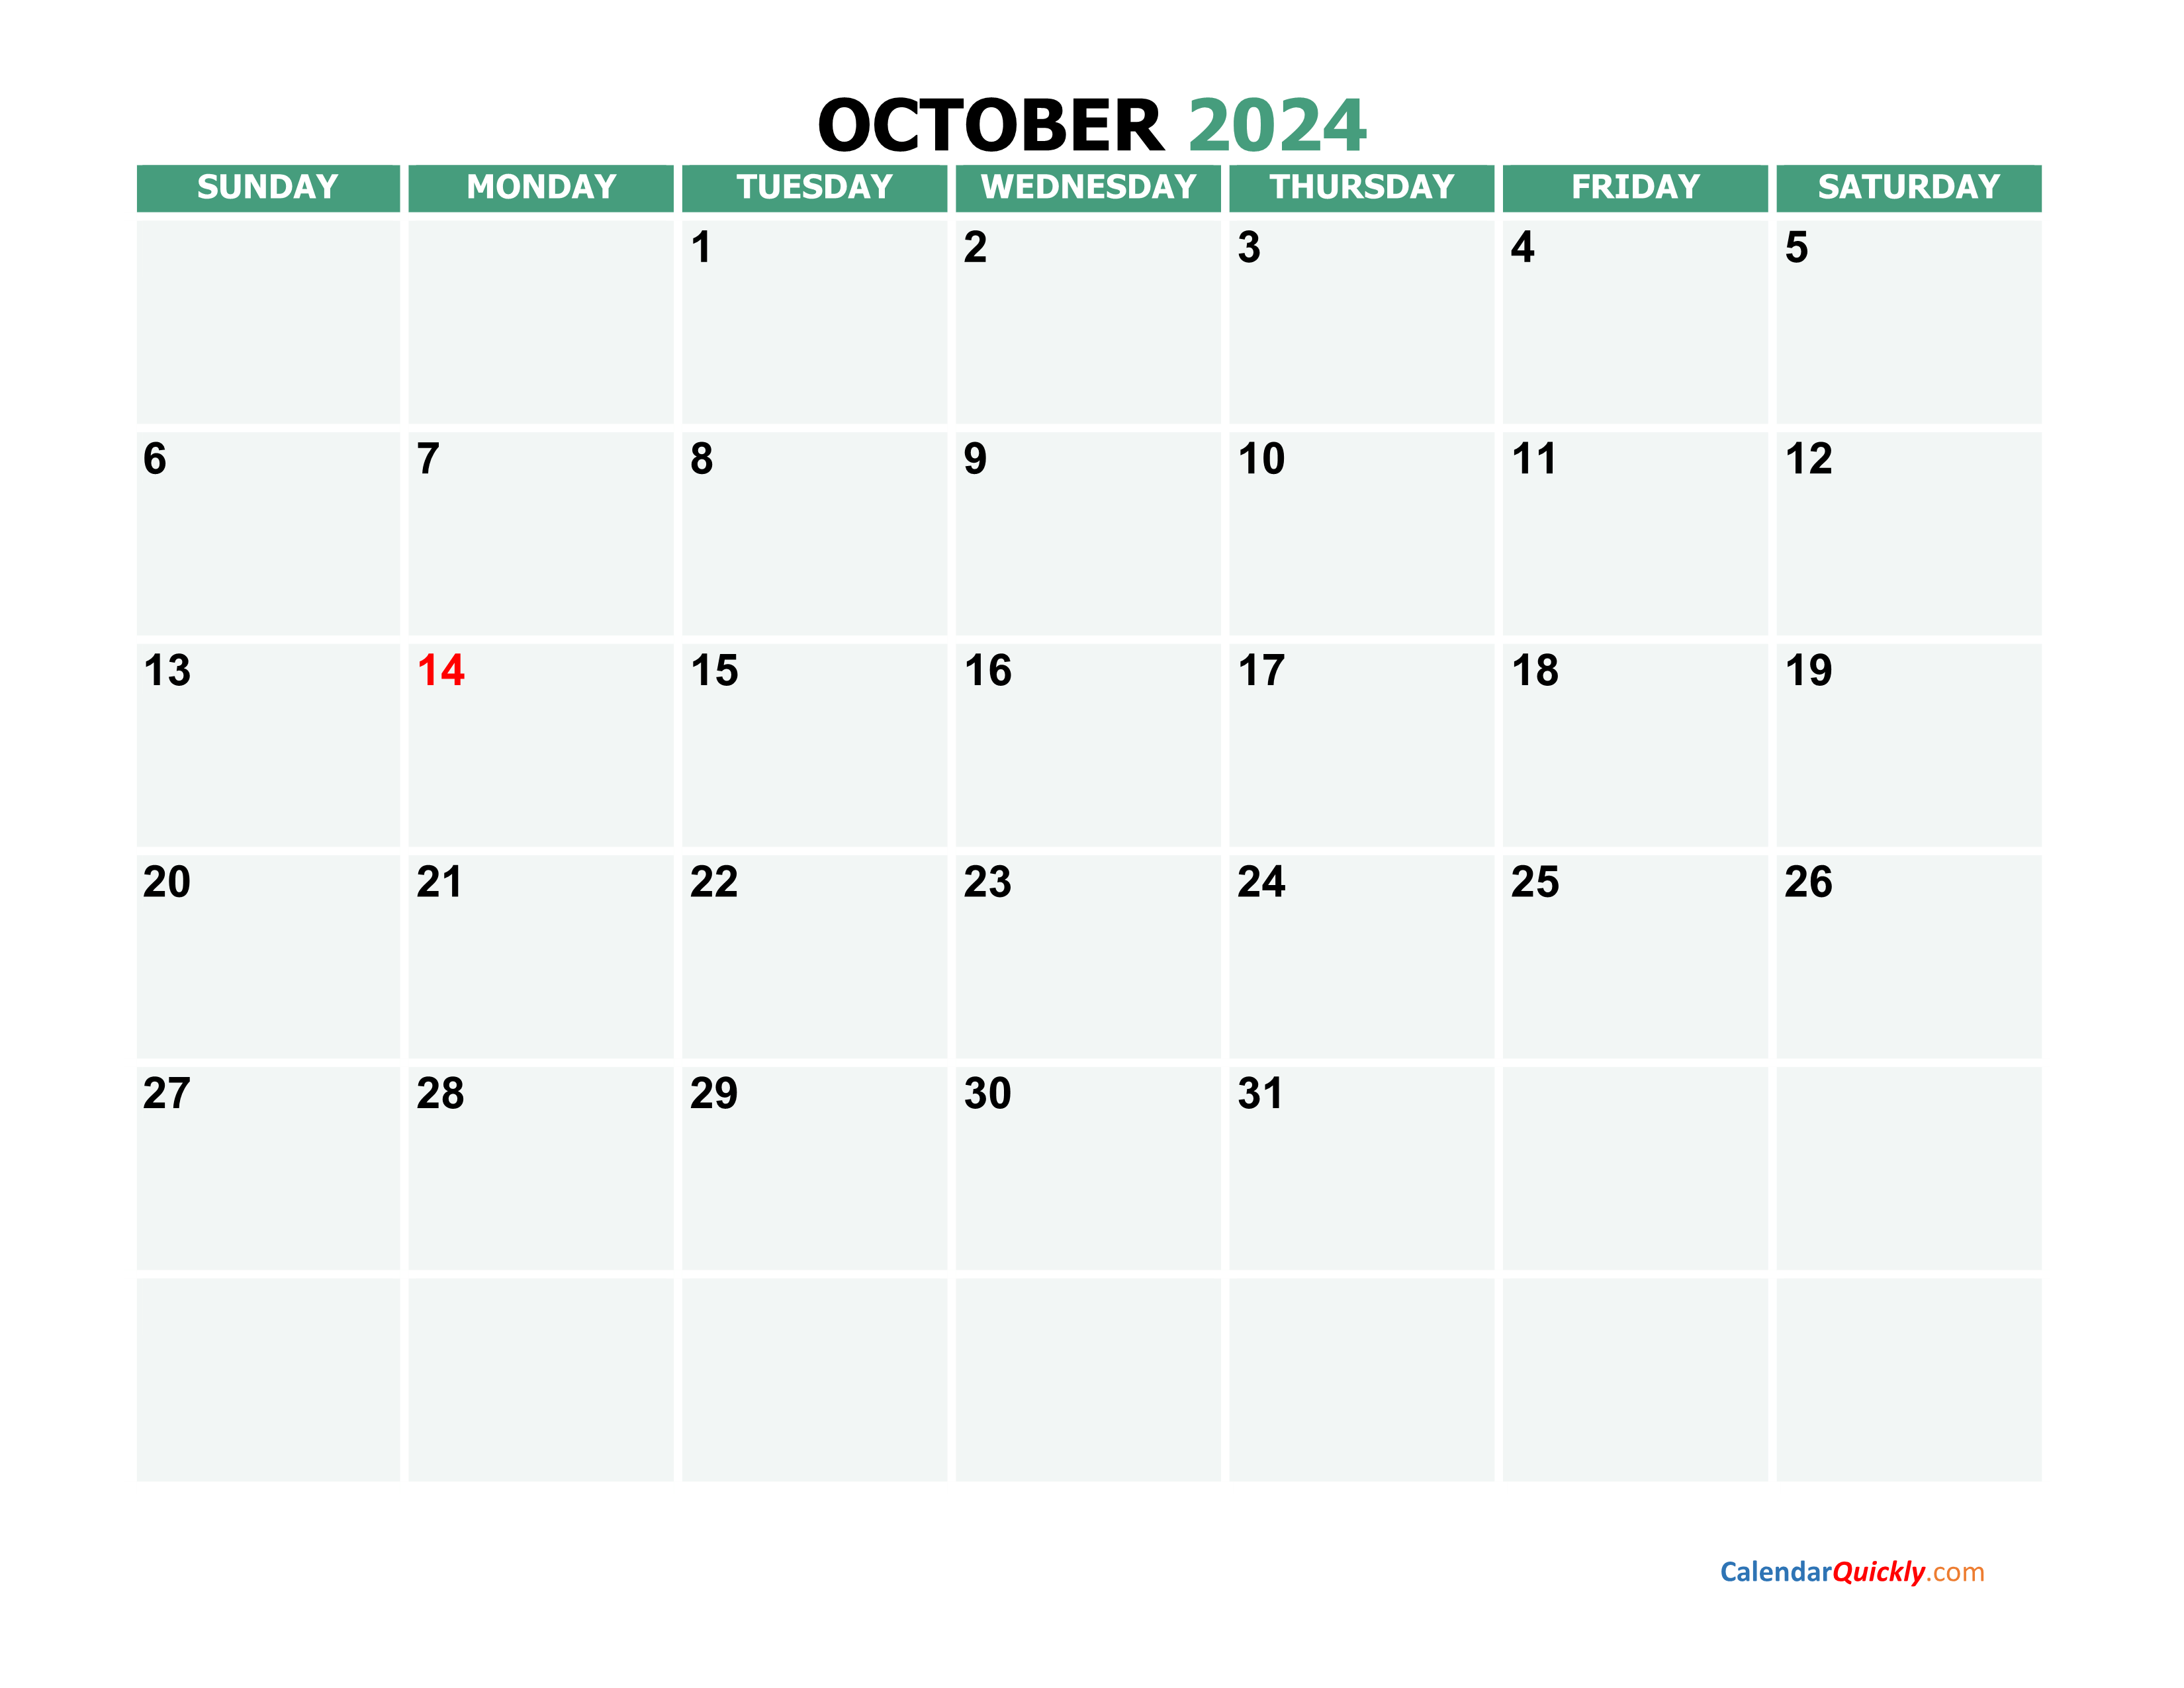 october-2024-calendars-calendar-quickly